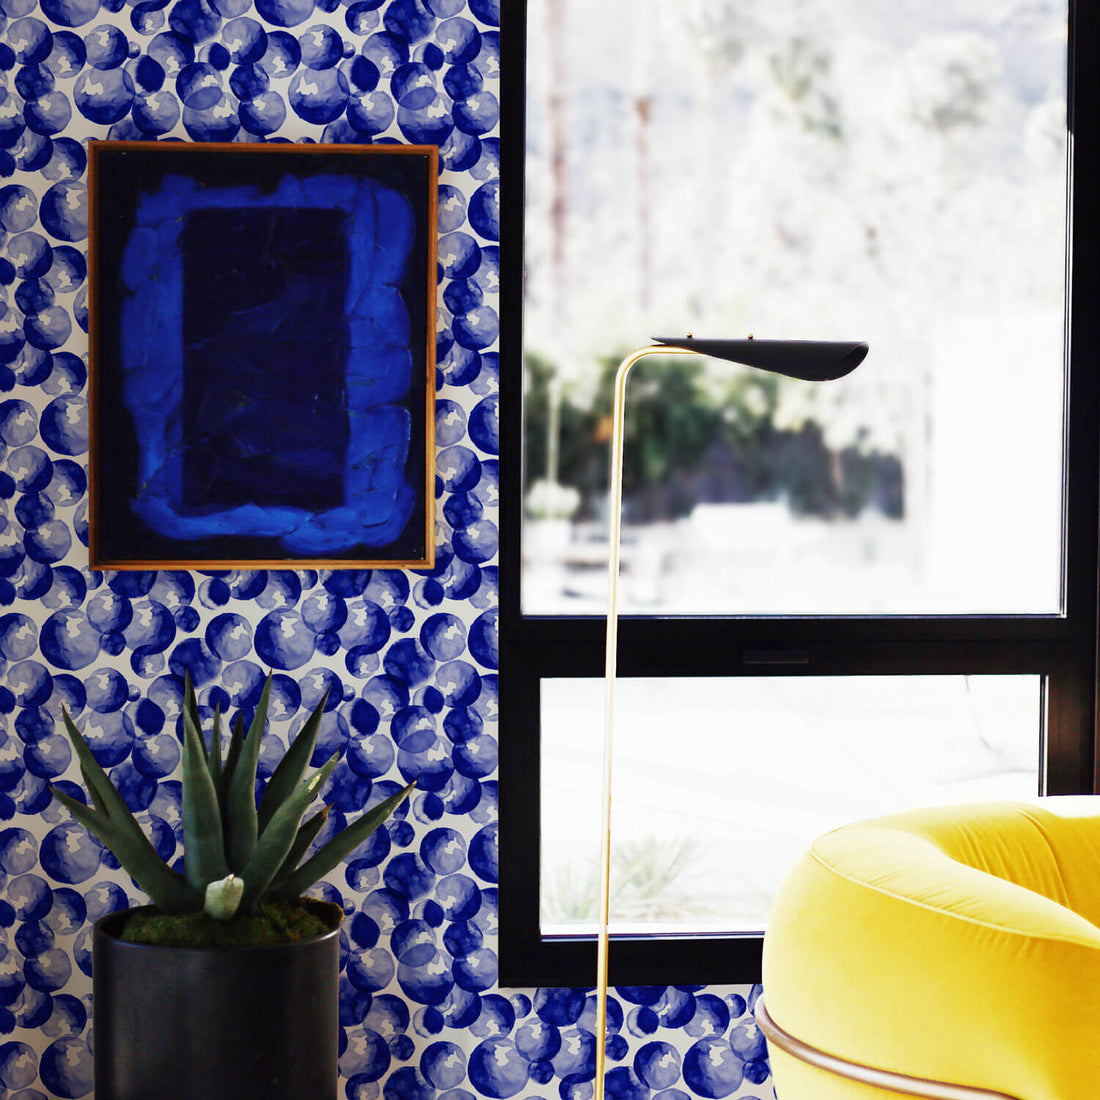 blueberry inspired blue wallpaper design for living room